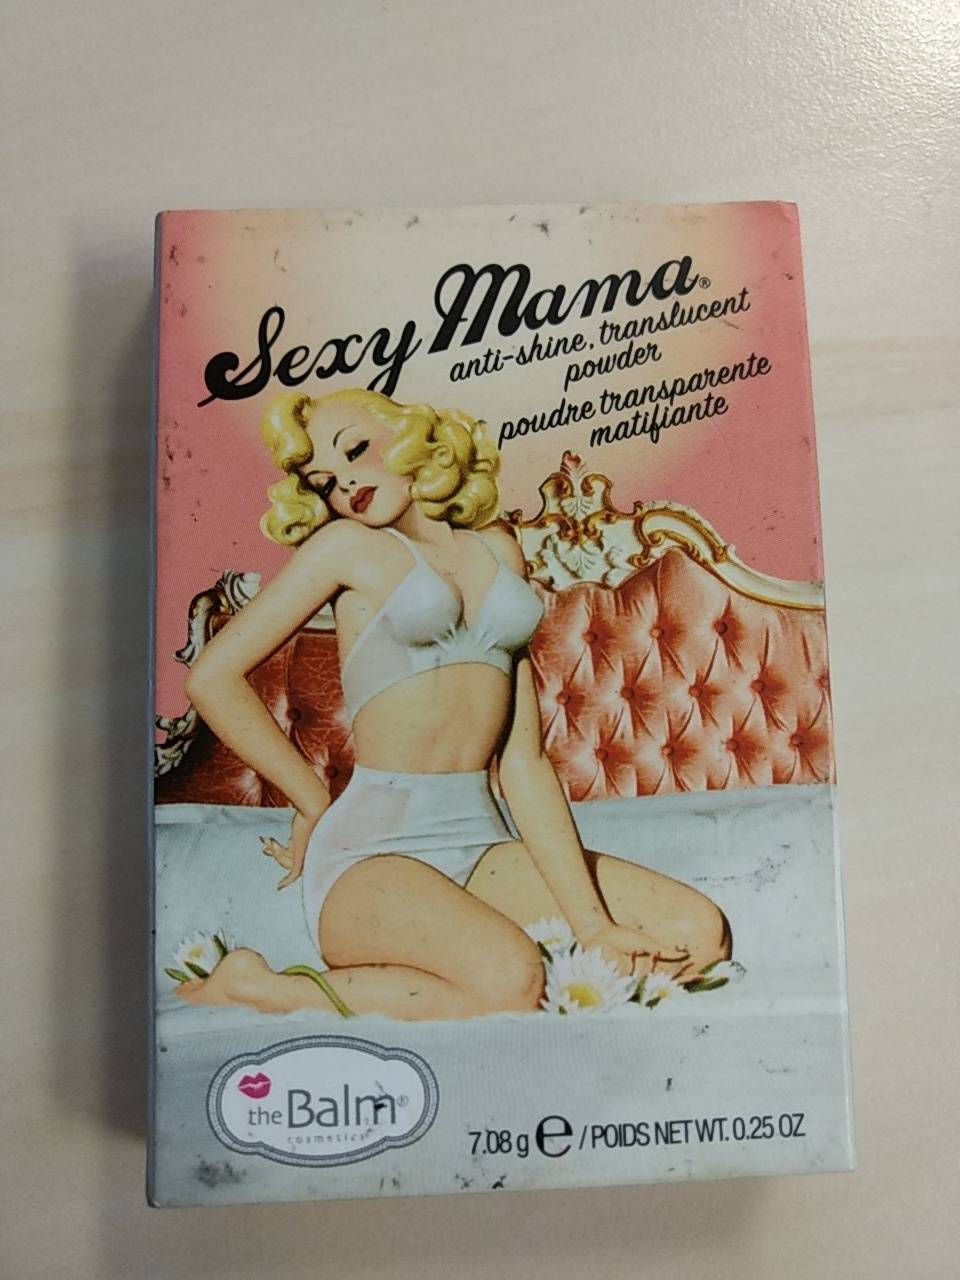 THE BALM - Sexy mama poudre transparente matifiante